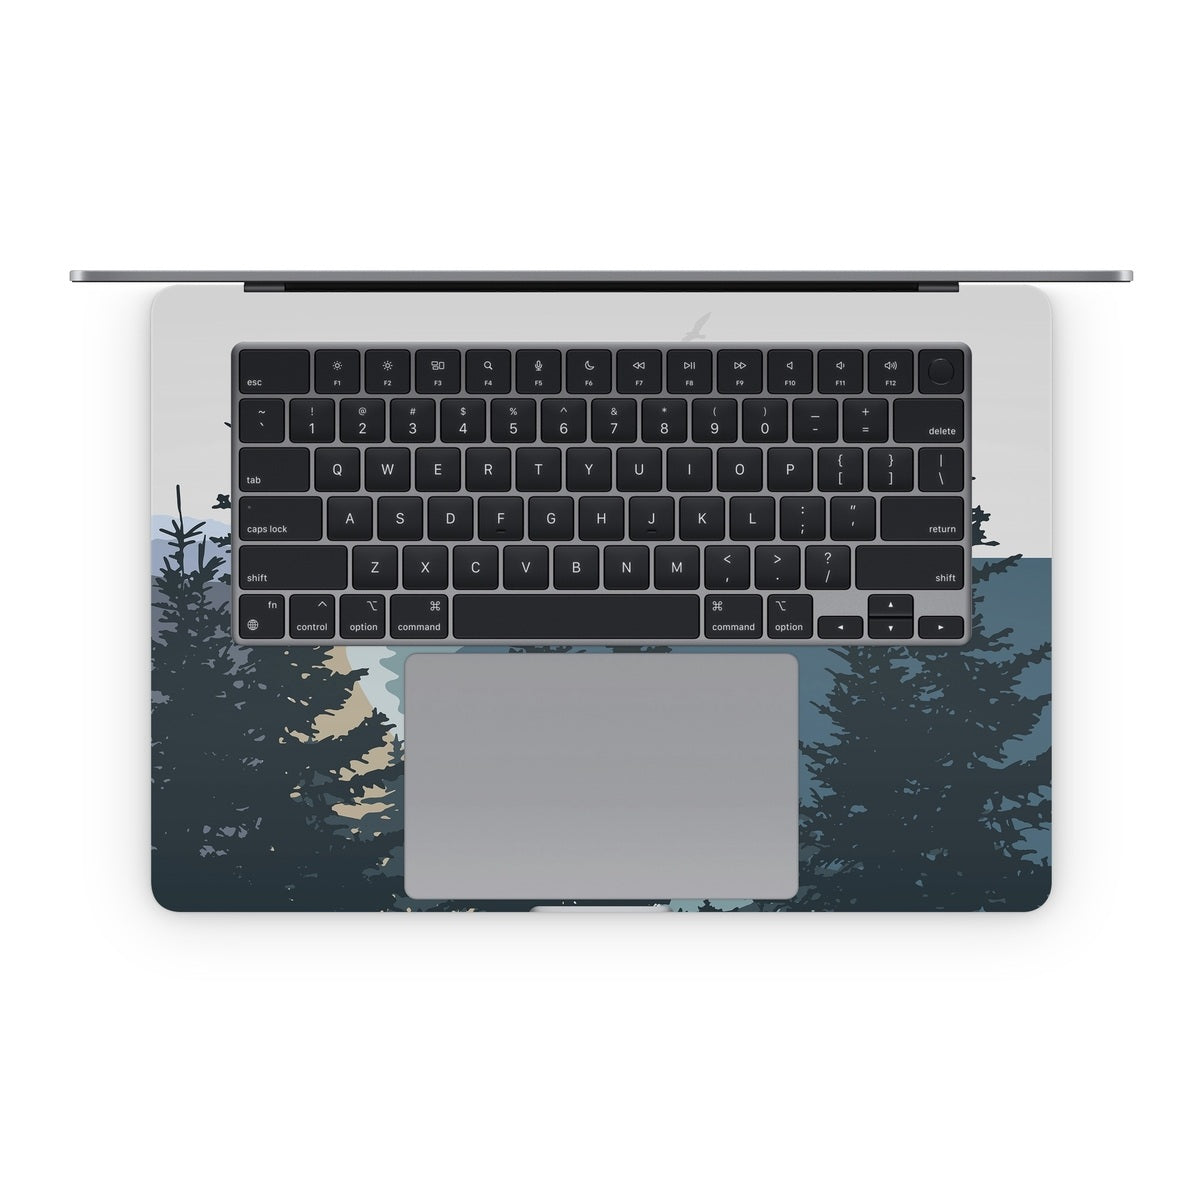 Overlook - Apple MacBook Skin